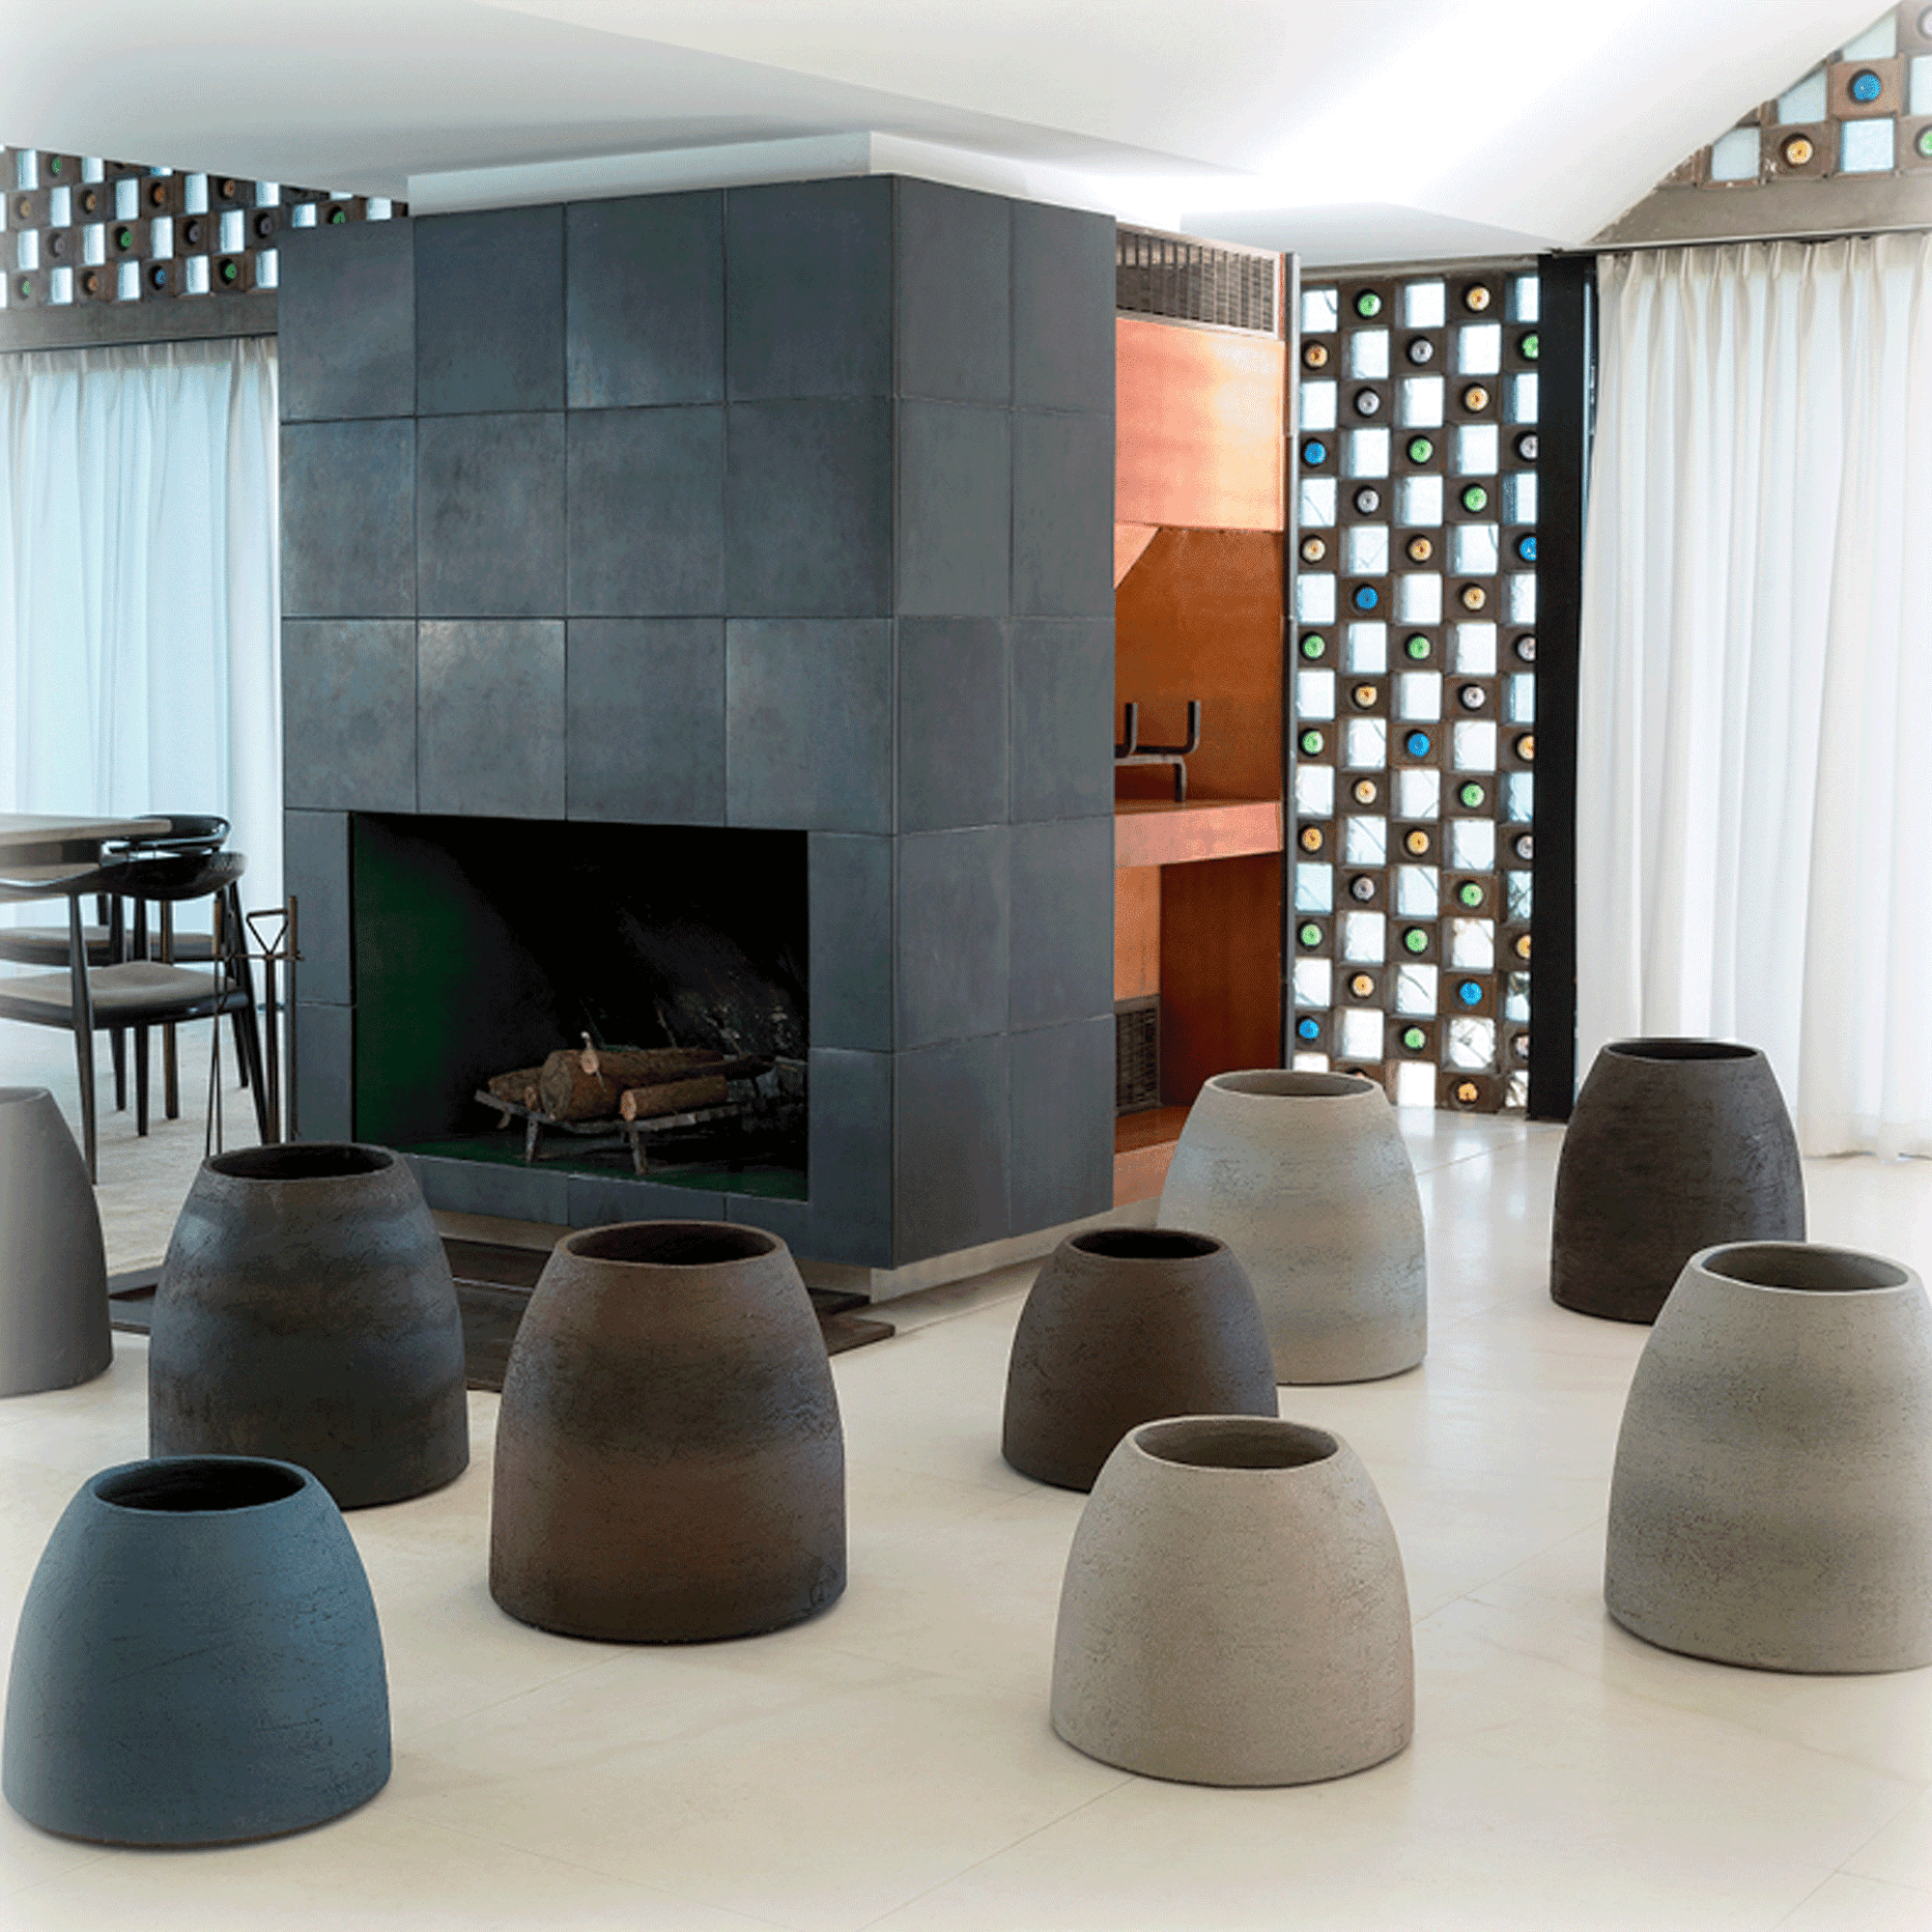 Diverse Atelier Vierkant Vasen TA30 und TA50 stehen vor einem gekacheltem Kamin. Rechts vom Kamin befindet sich ein Esstisch.